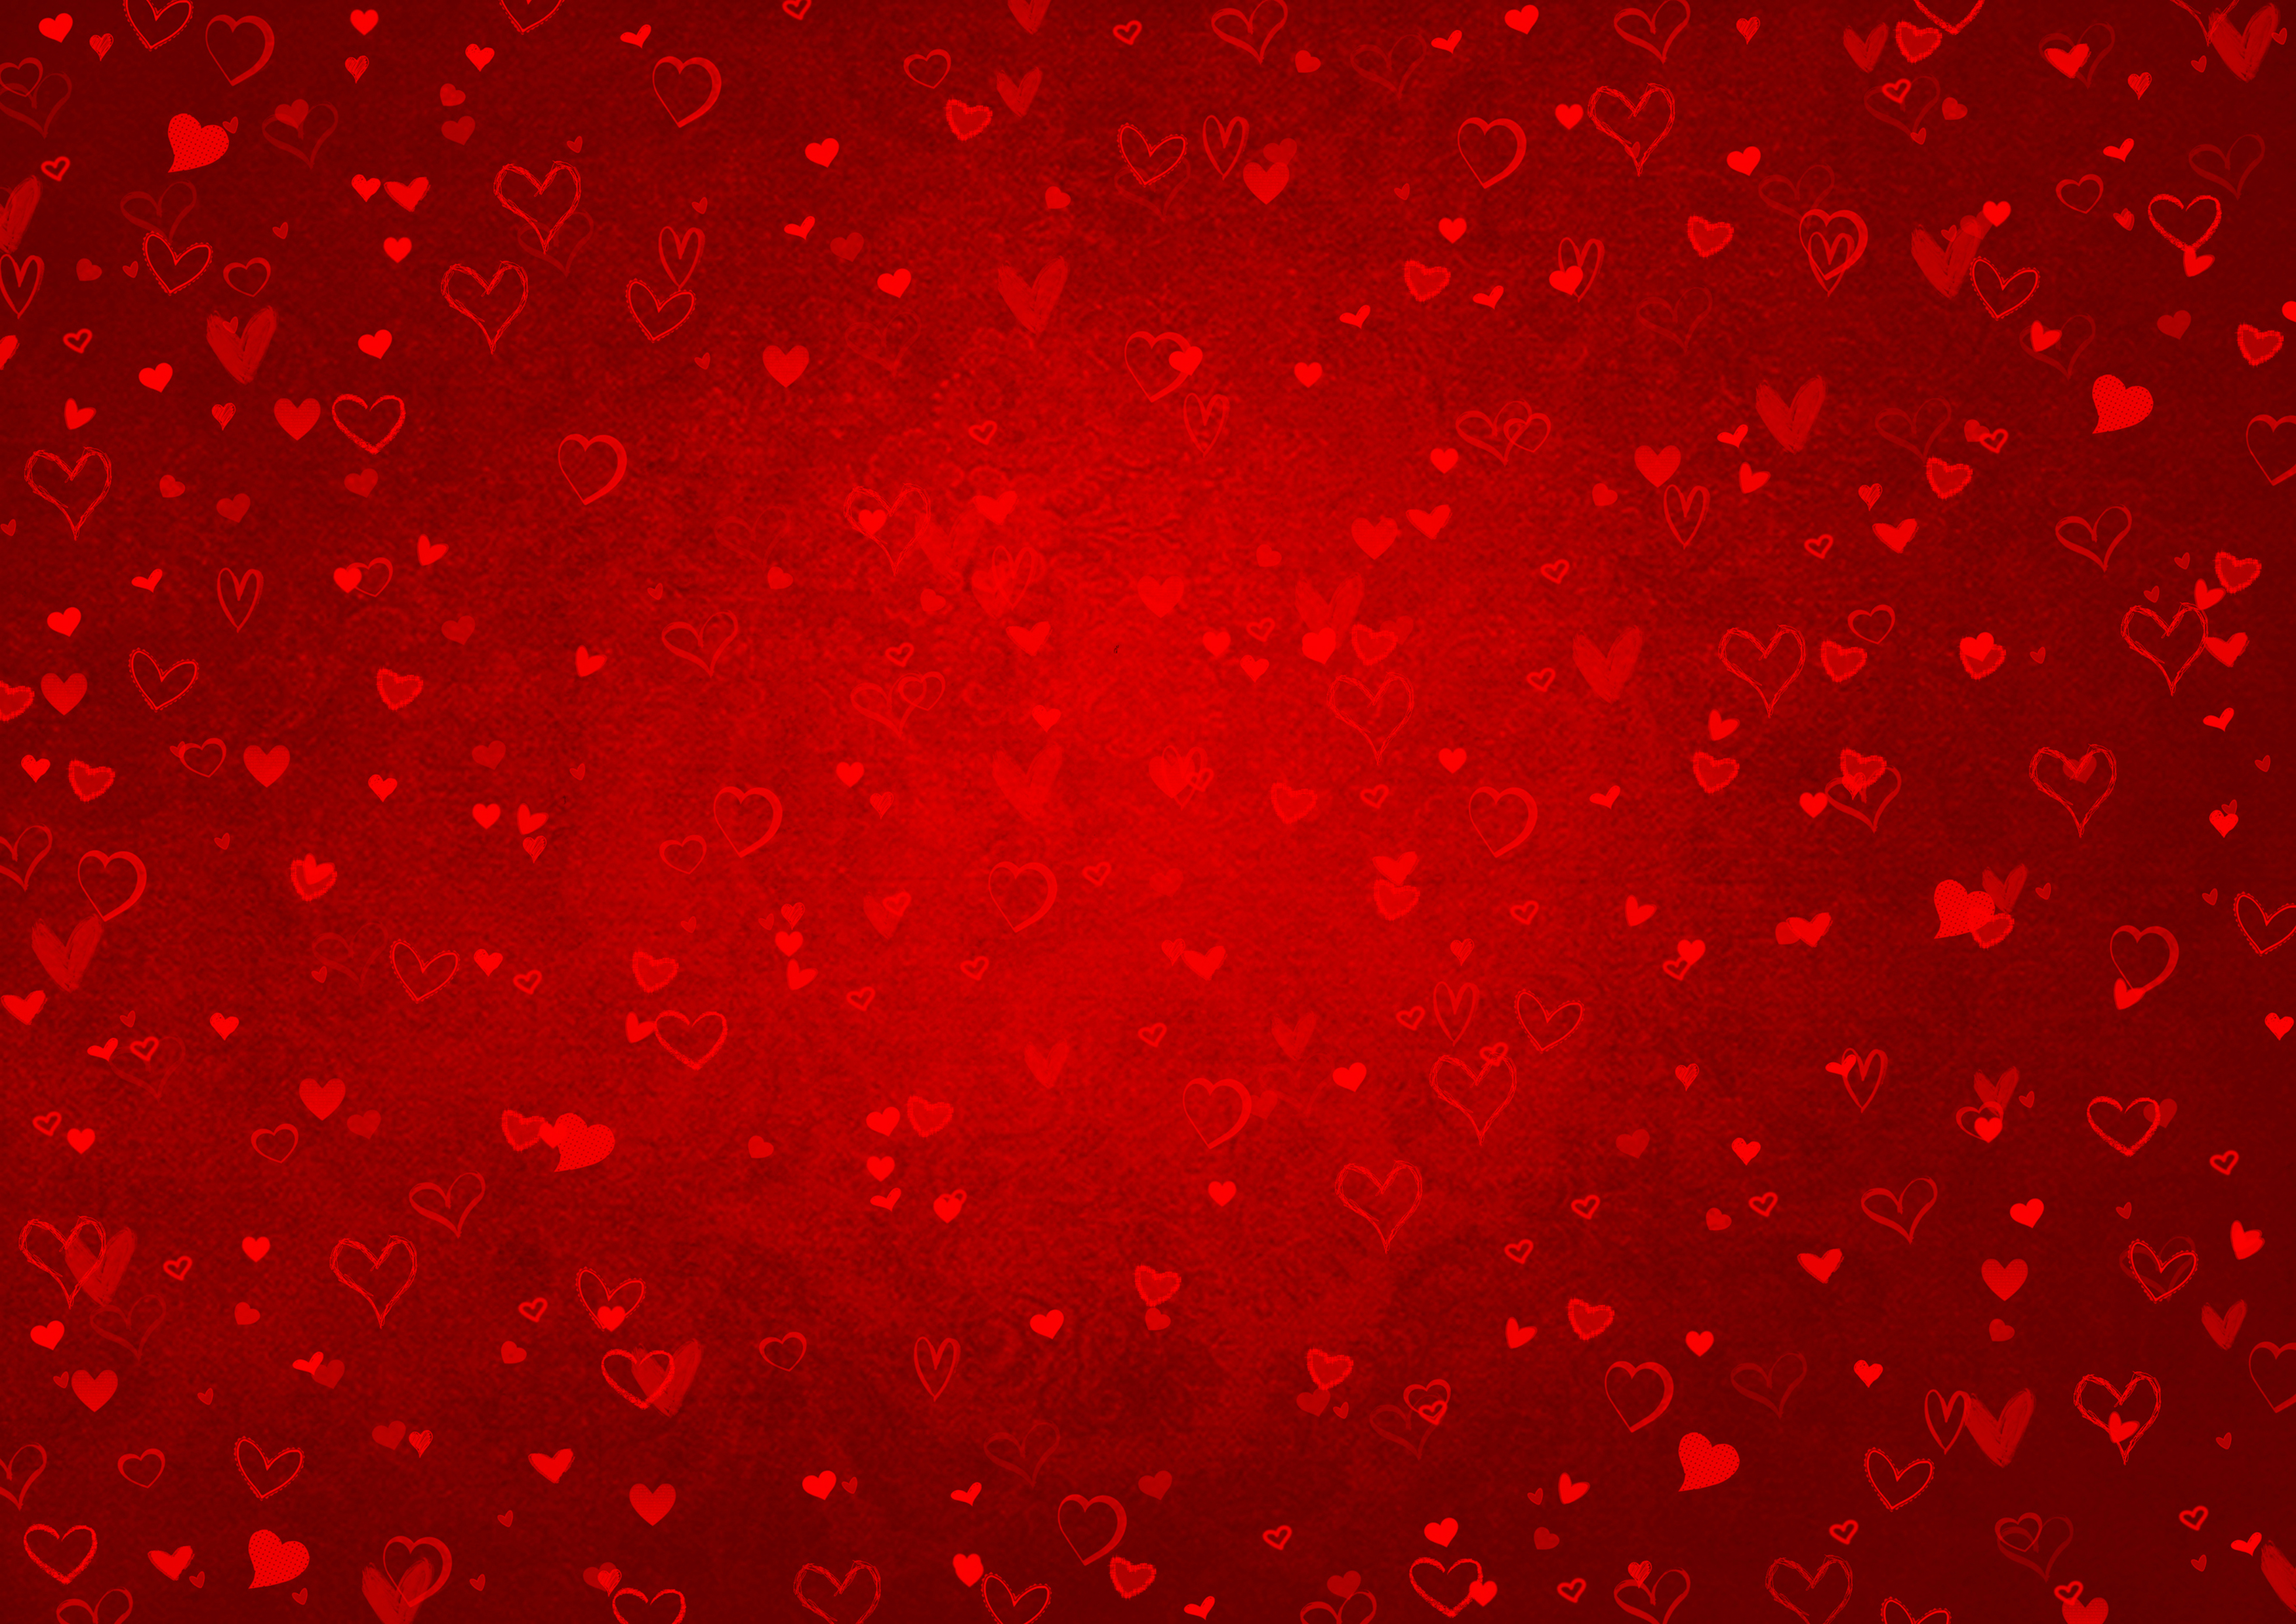 Hãy cùng ngắm nhìn hình nền đầy phù hợp với ngày Valentine với nền đỏ và hình trái tim. Điệu đà, lãng mạn và đáng yêu, chắc chắn sẽ làm bạn cảm thấy ghét bỏ nó.